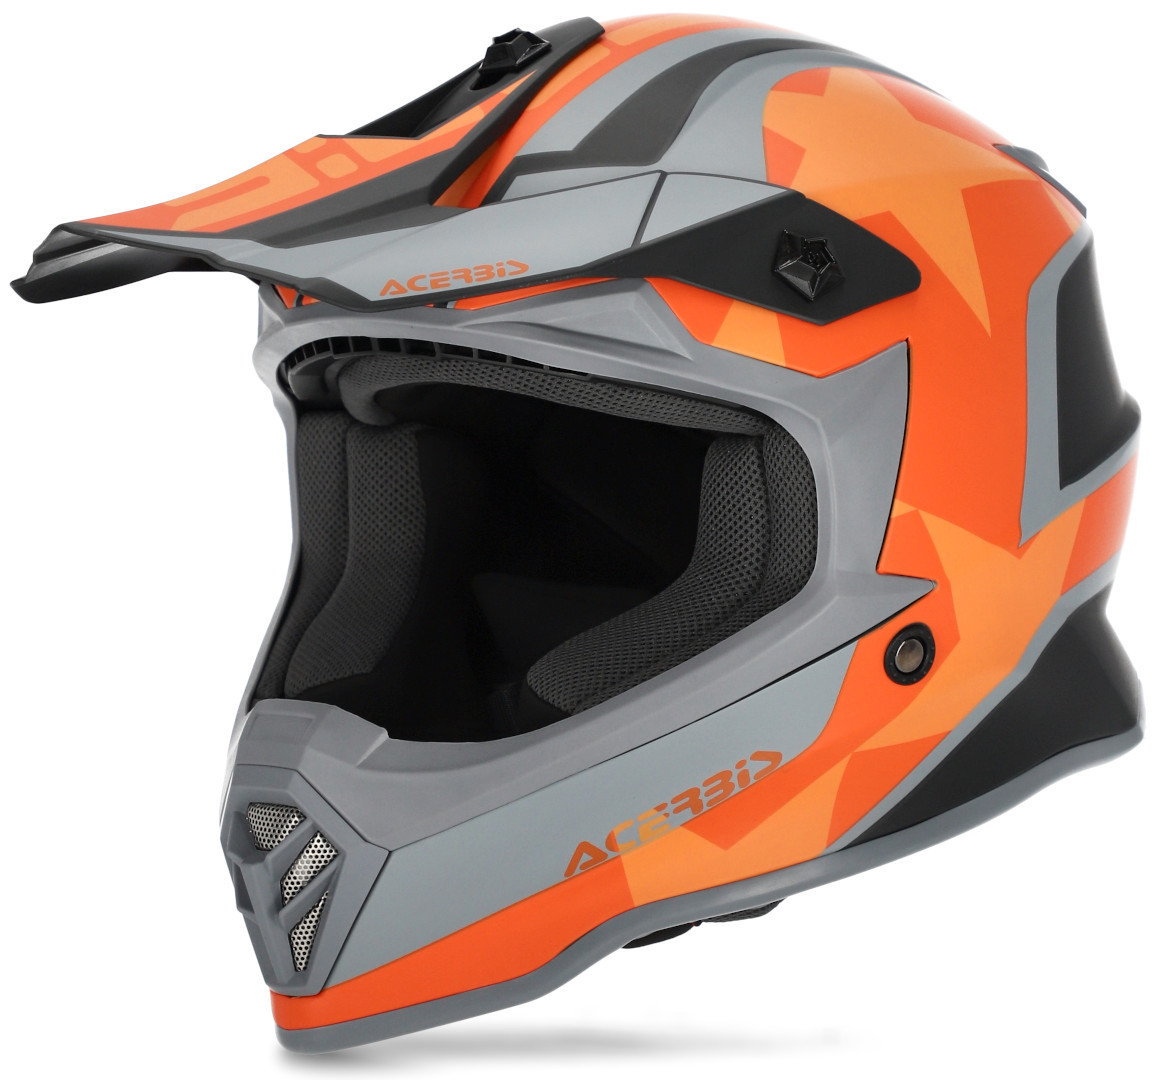 Image of Acerbis Steel Stars Casco motocross per bambini, grigio-arancione, dimensione S